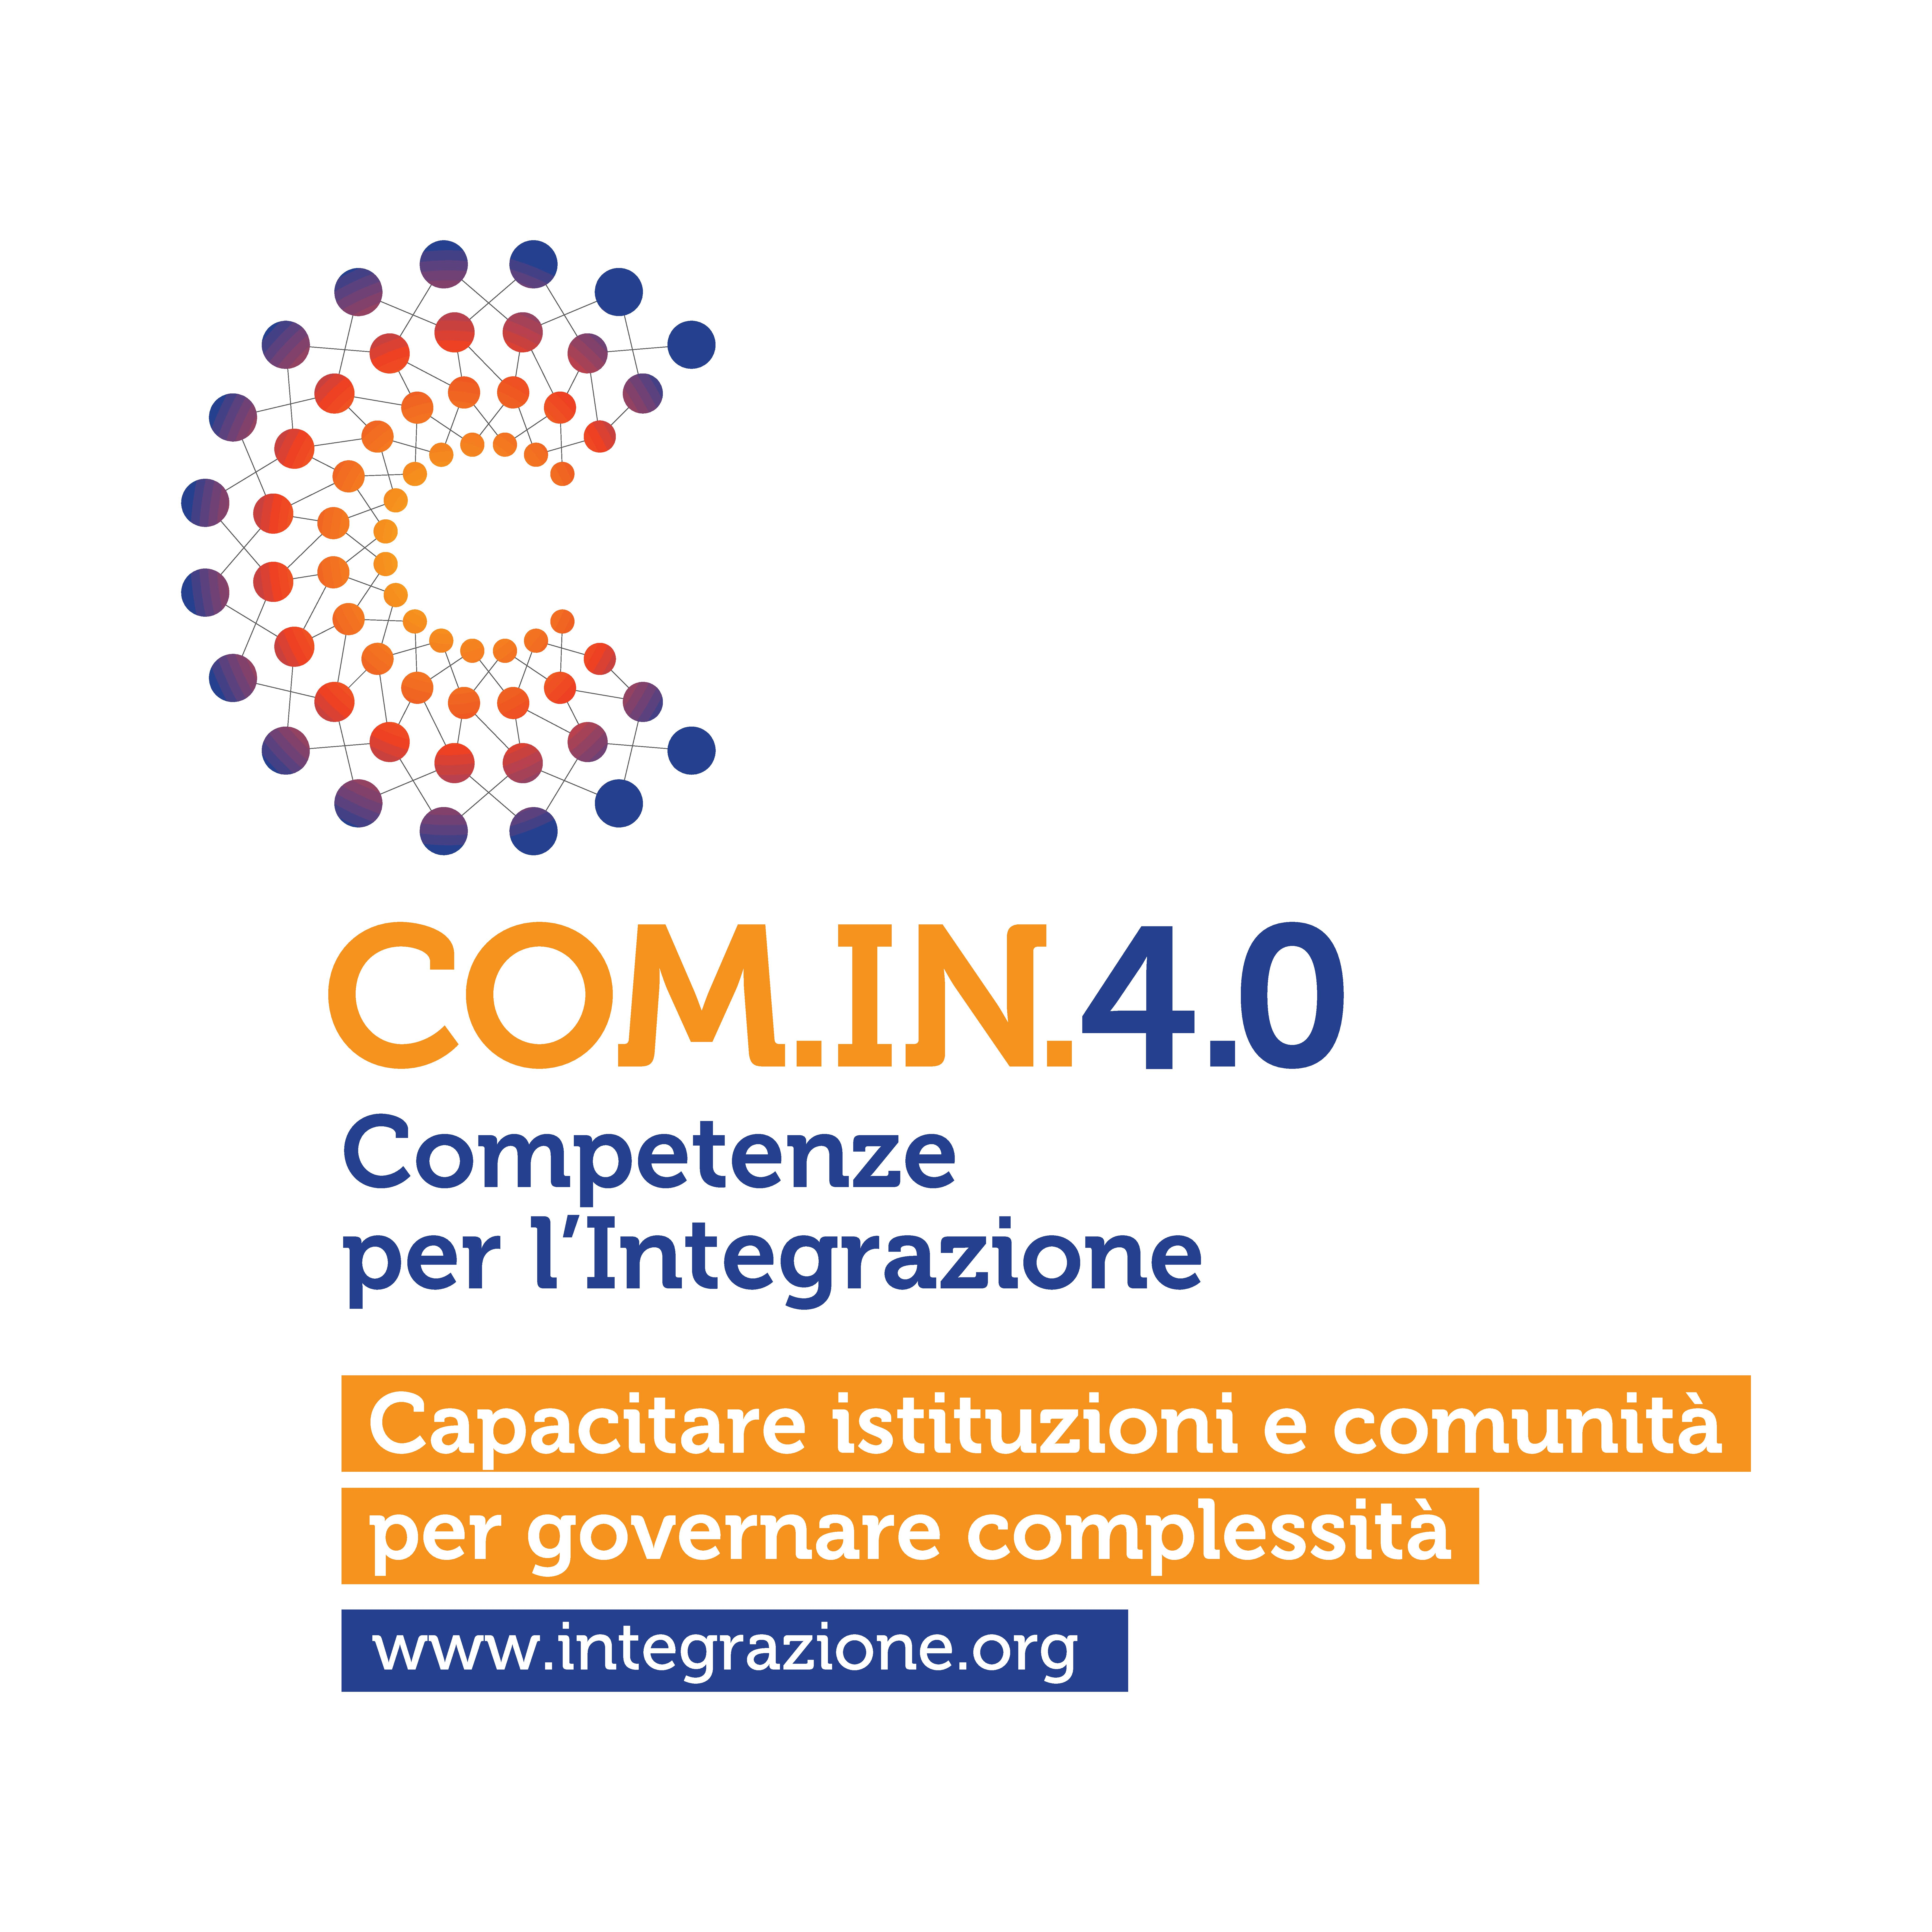 “Noi siamo fatti di orizzonti”, Living Lab di Com.In.4.0 in Campania